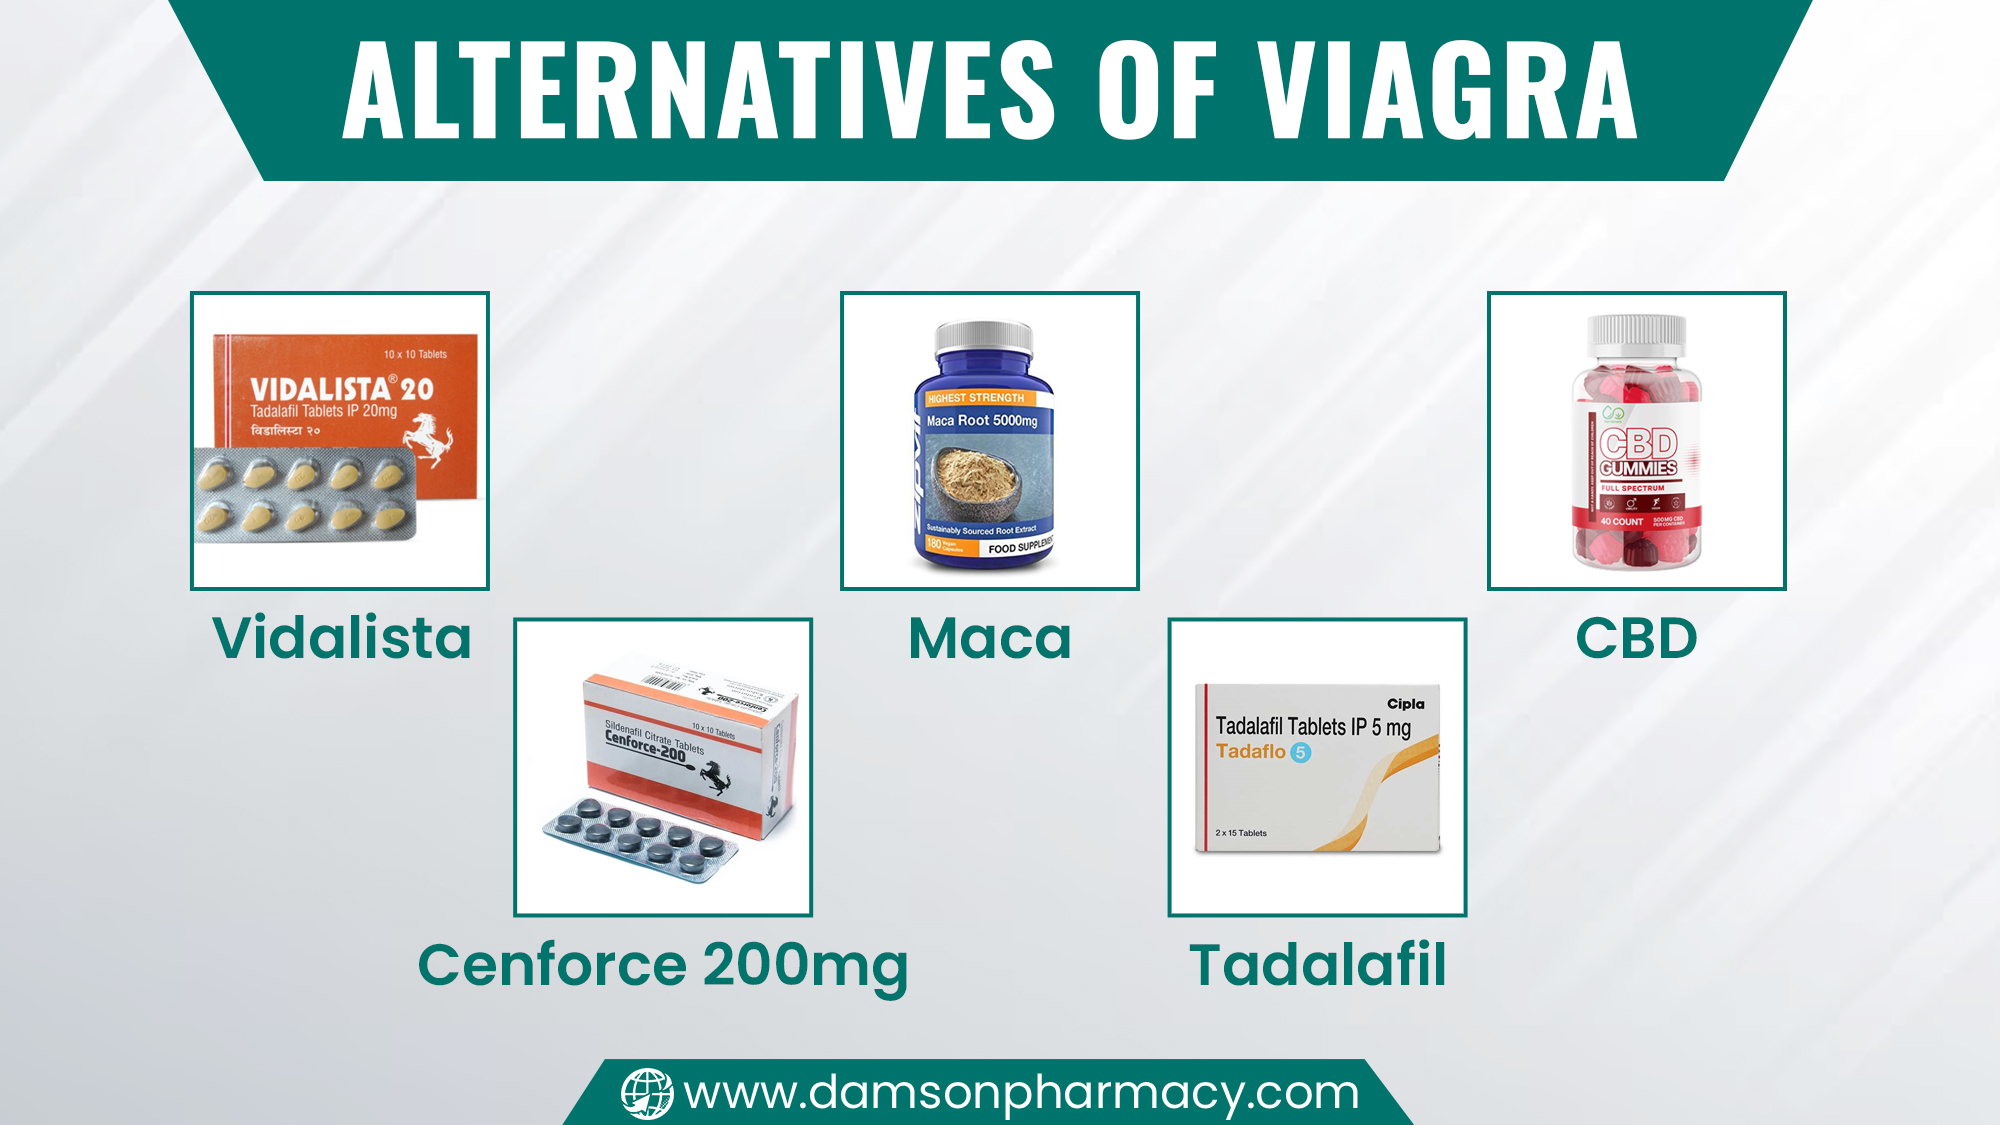 Alternatives of Viagra